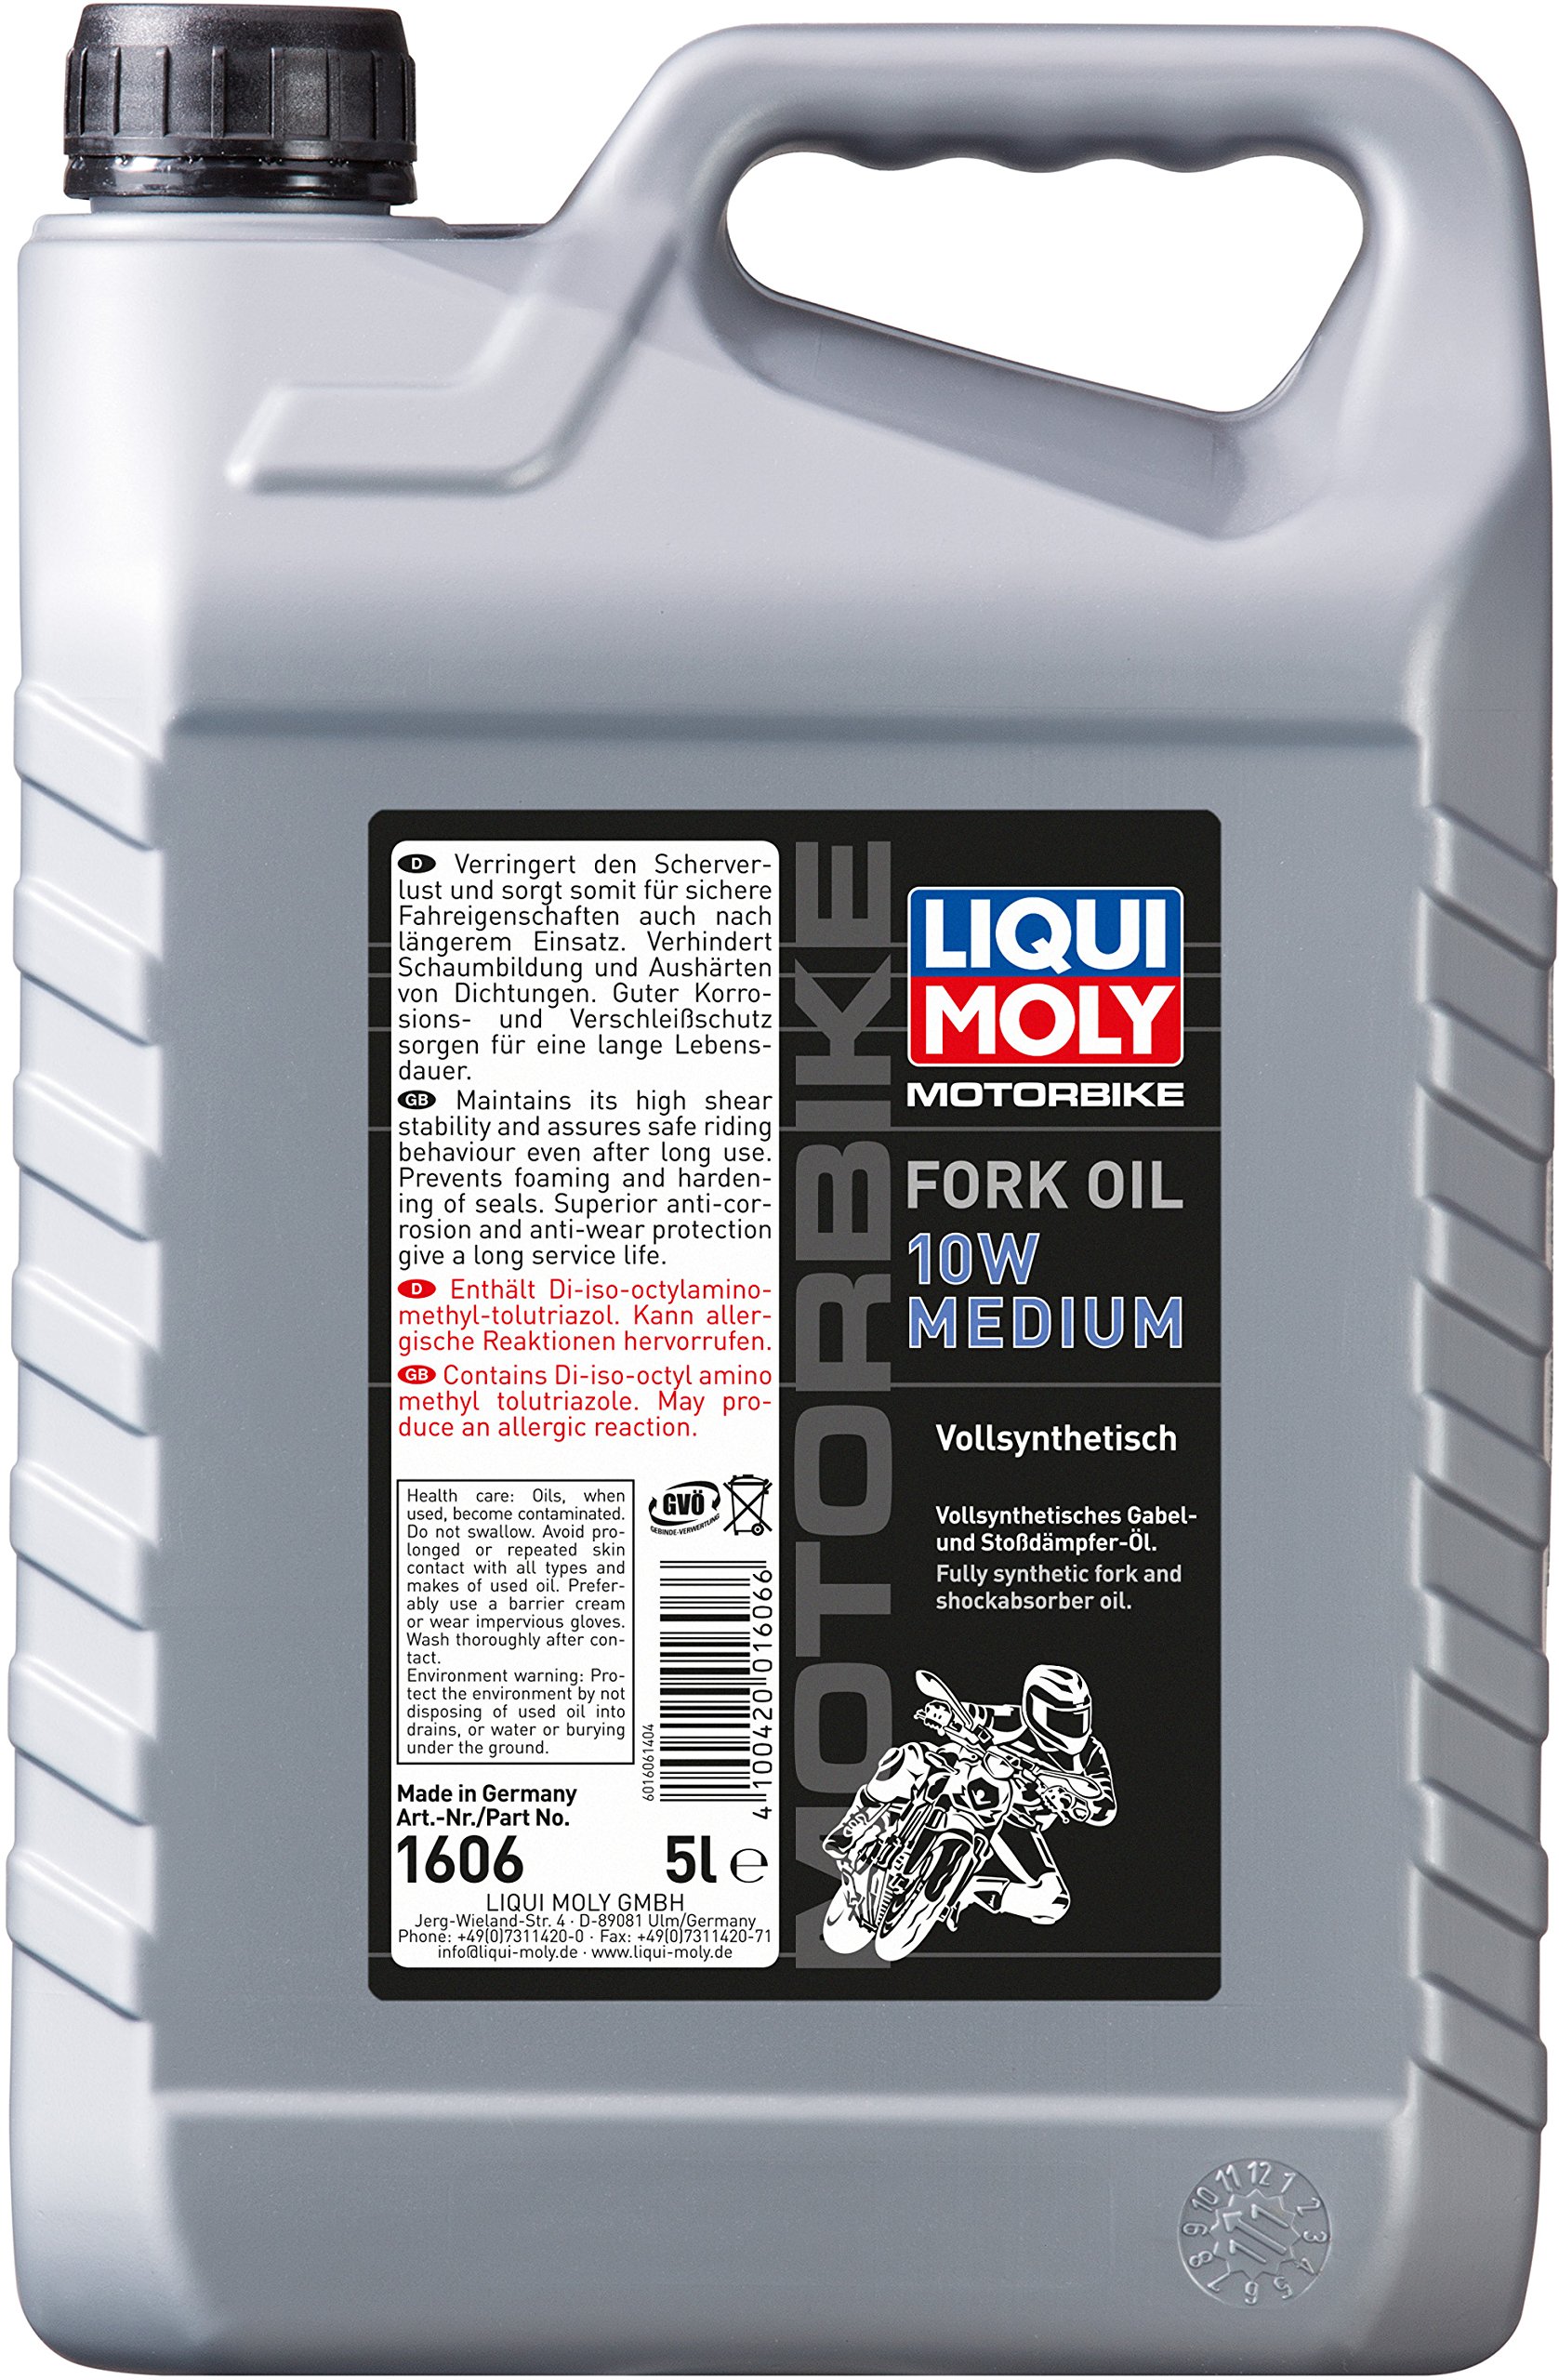 LIQUI MOLY Motorbike Fork Oil 10W medium | 5 L | Motorrad Gabelöl | Art.-Nr.: 1606 von Liqui Moly